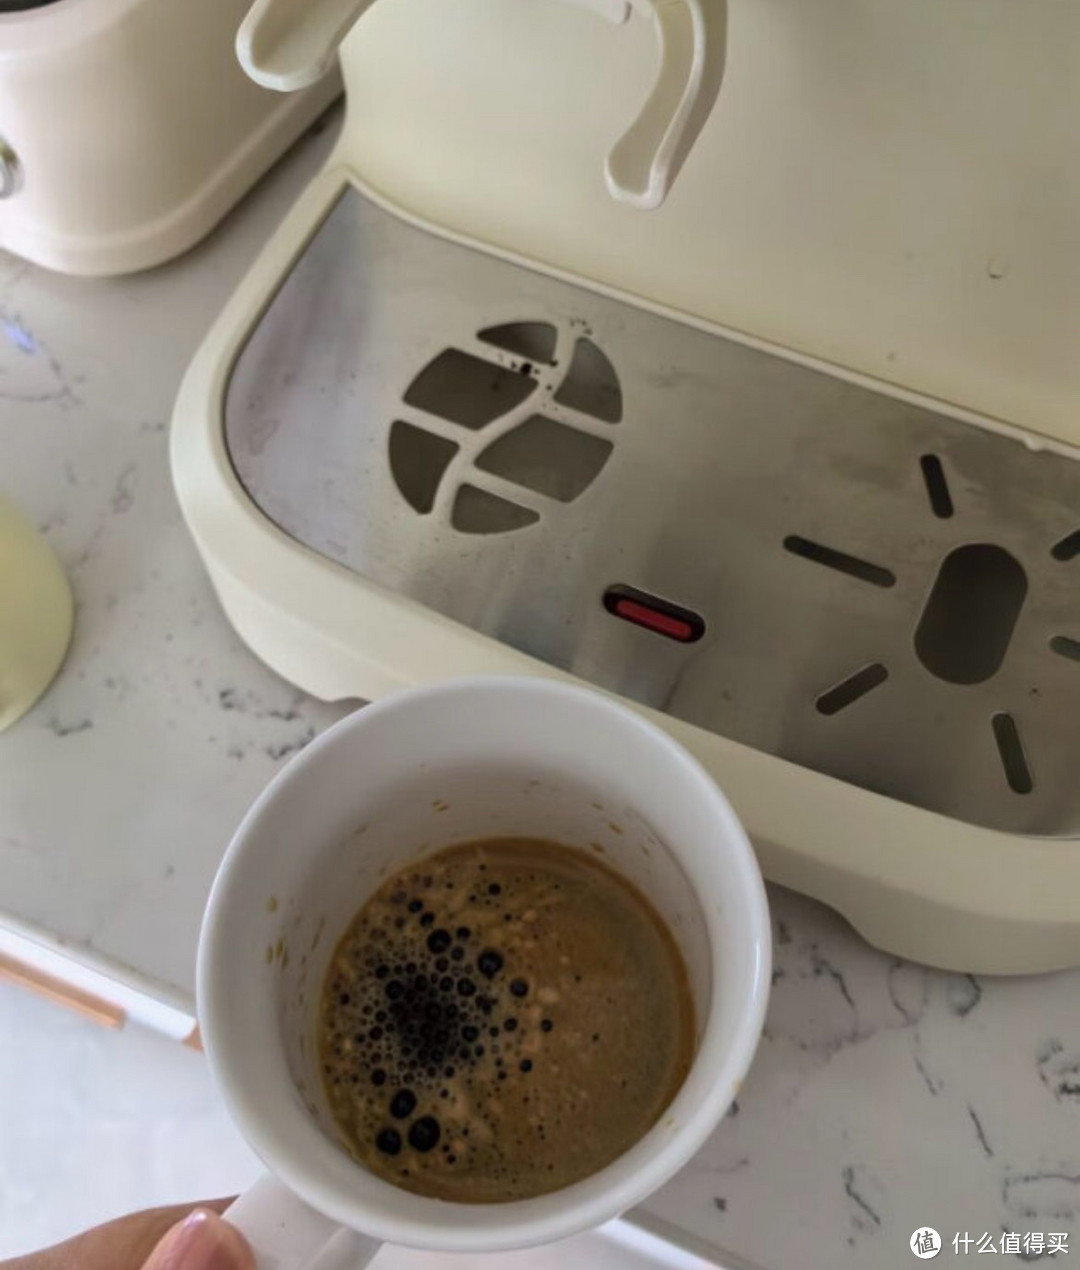 雪特朗咖啡机让你成为咖啡大师。